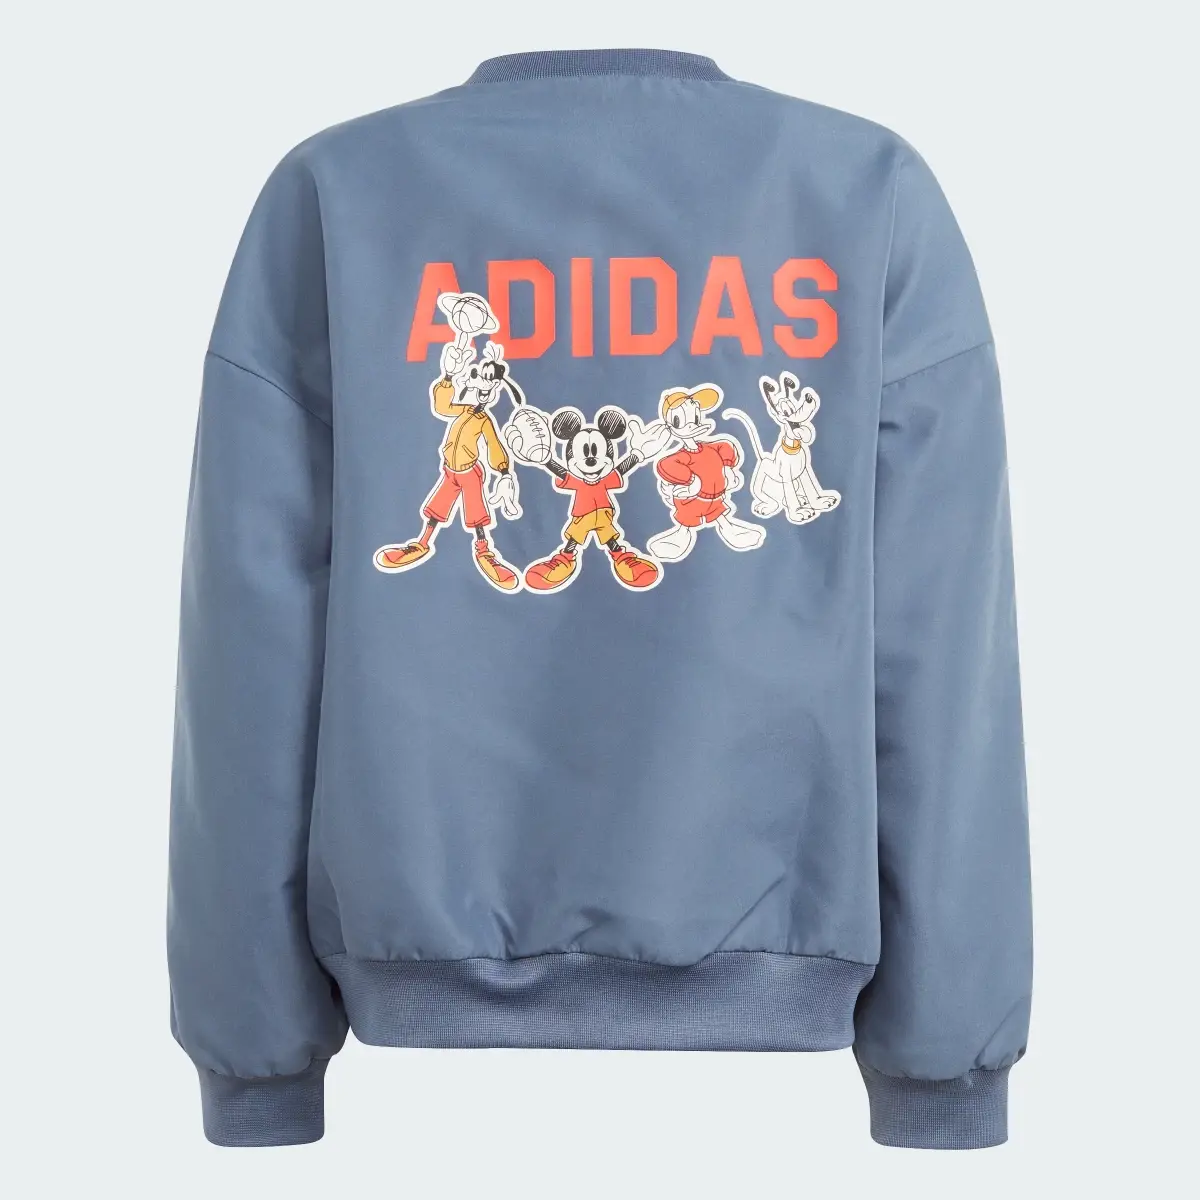 Adidas Wiatrówka Disney Mickey Mouse Kids. 2